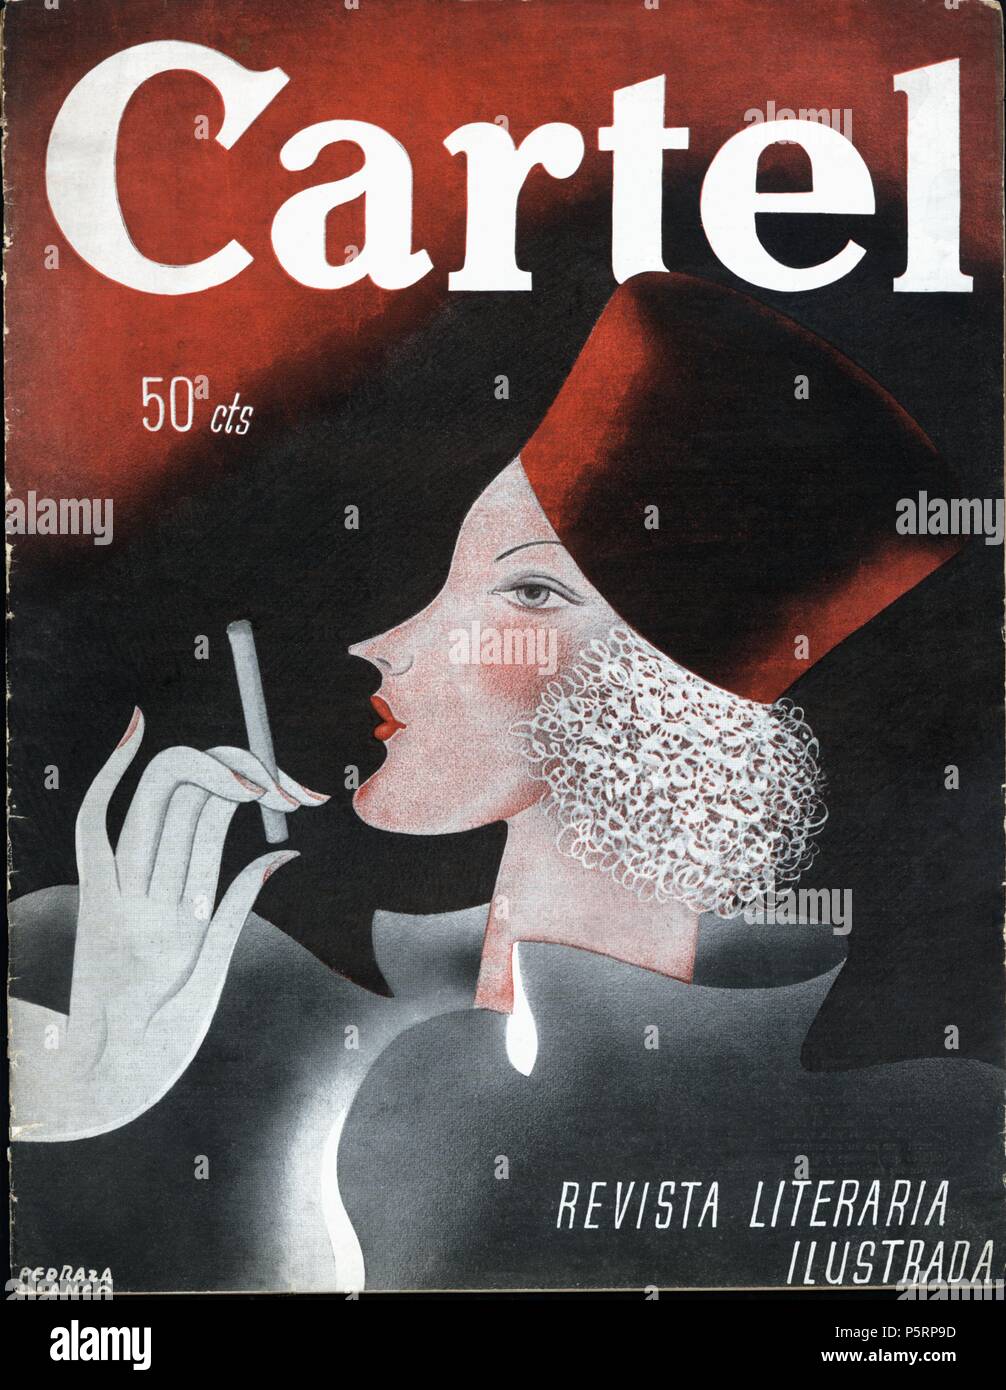 Portada del número Uno de la Revista literaria ilustrada Kartell, del 7 de  Abril de 1935, publicada en Madrid Stockfotografie - Alamy